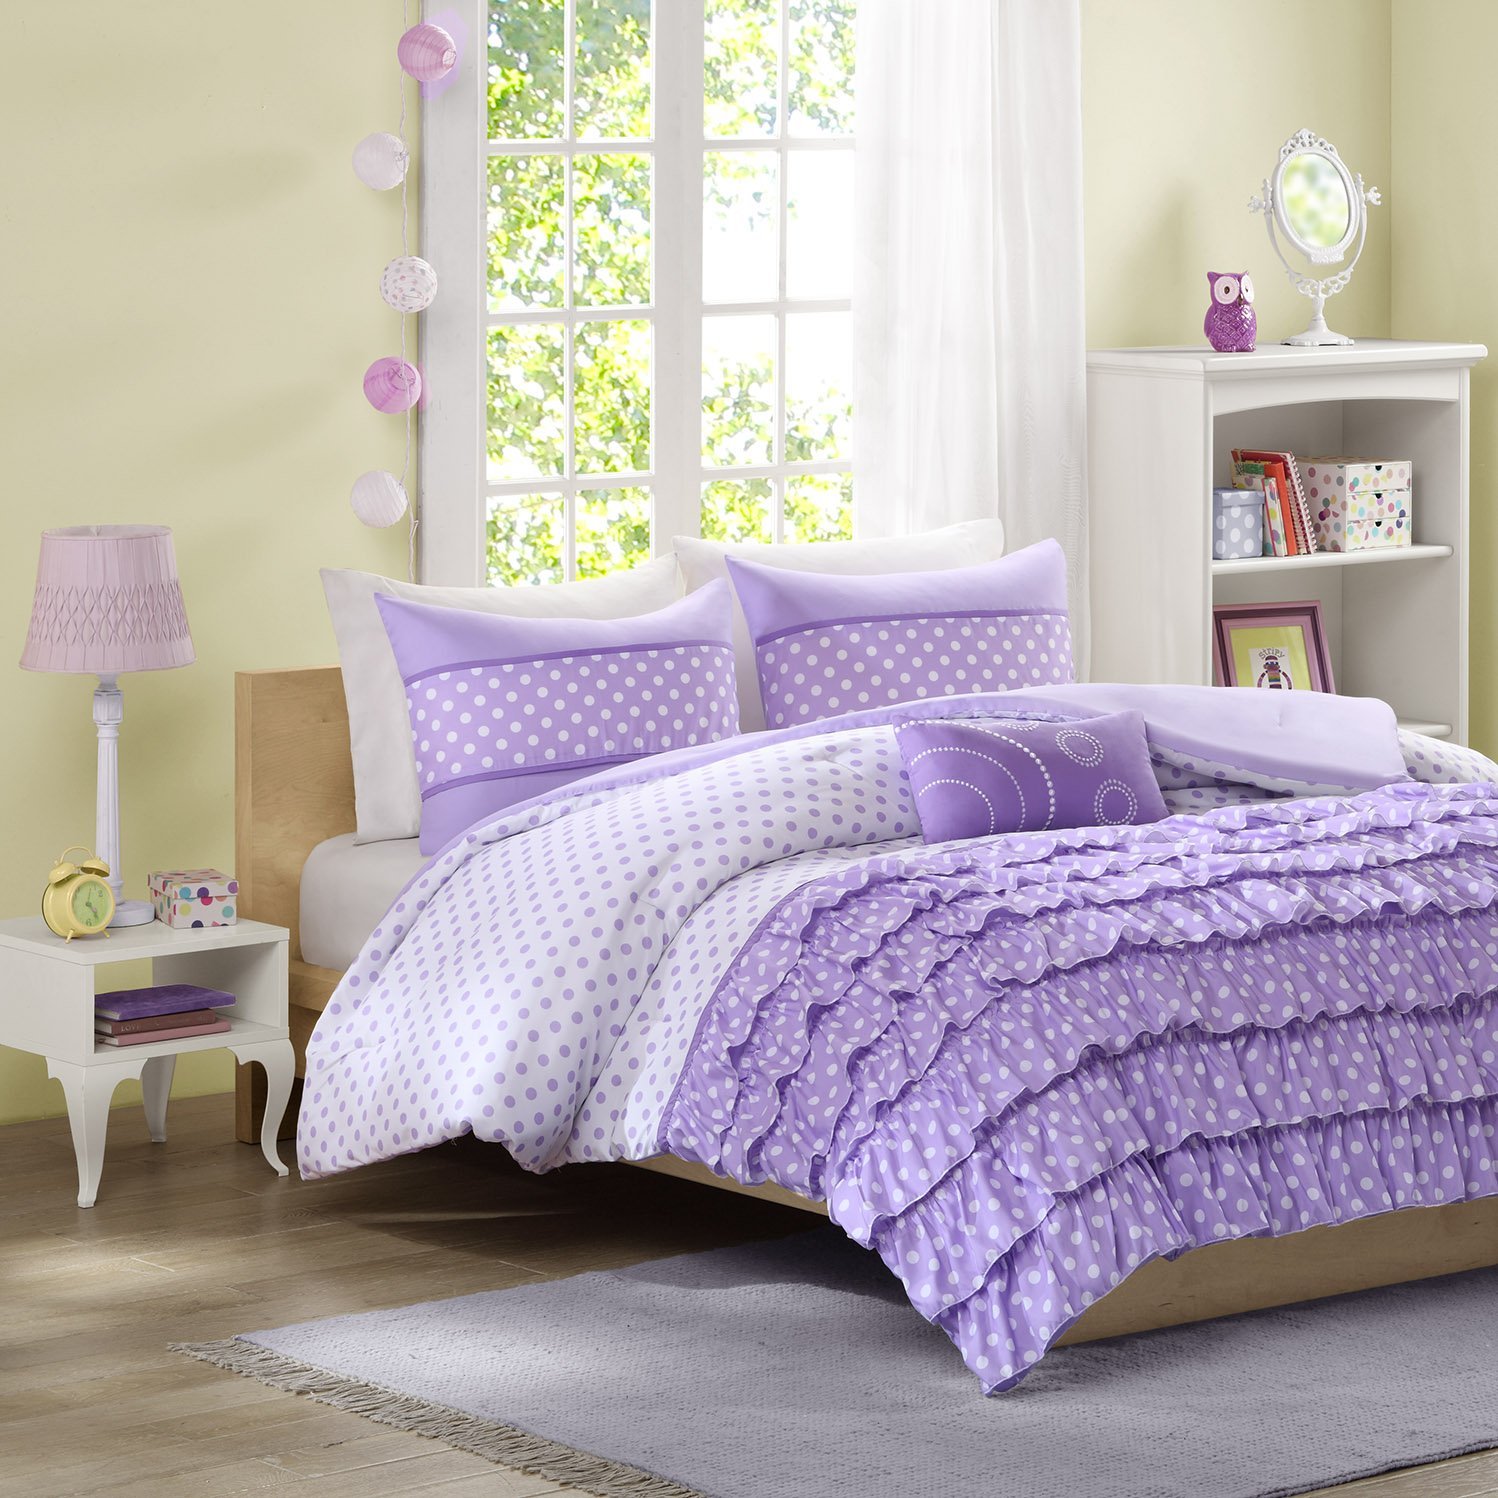 Mizone Morgan 4 Piece Comforter Set, Full/Queen, Purple